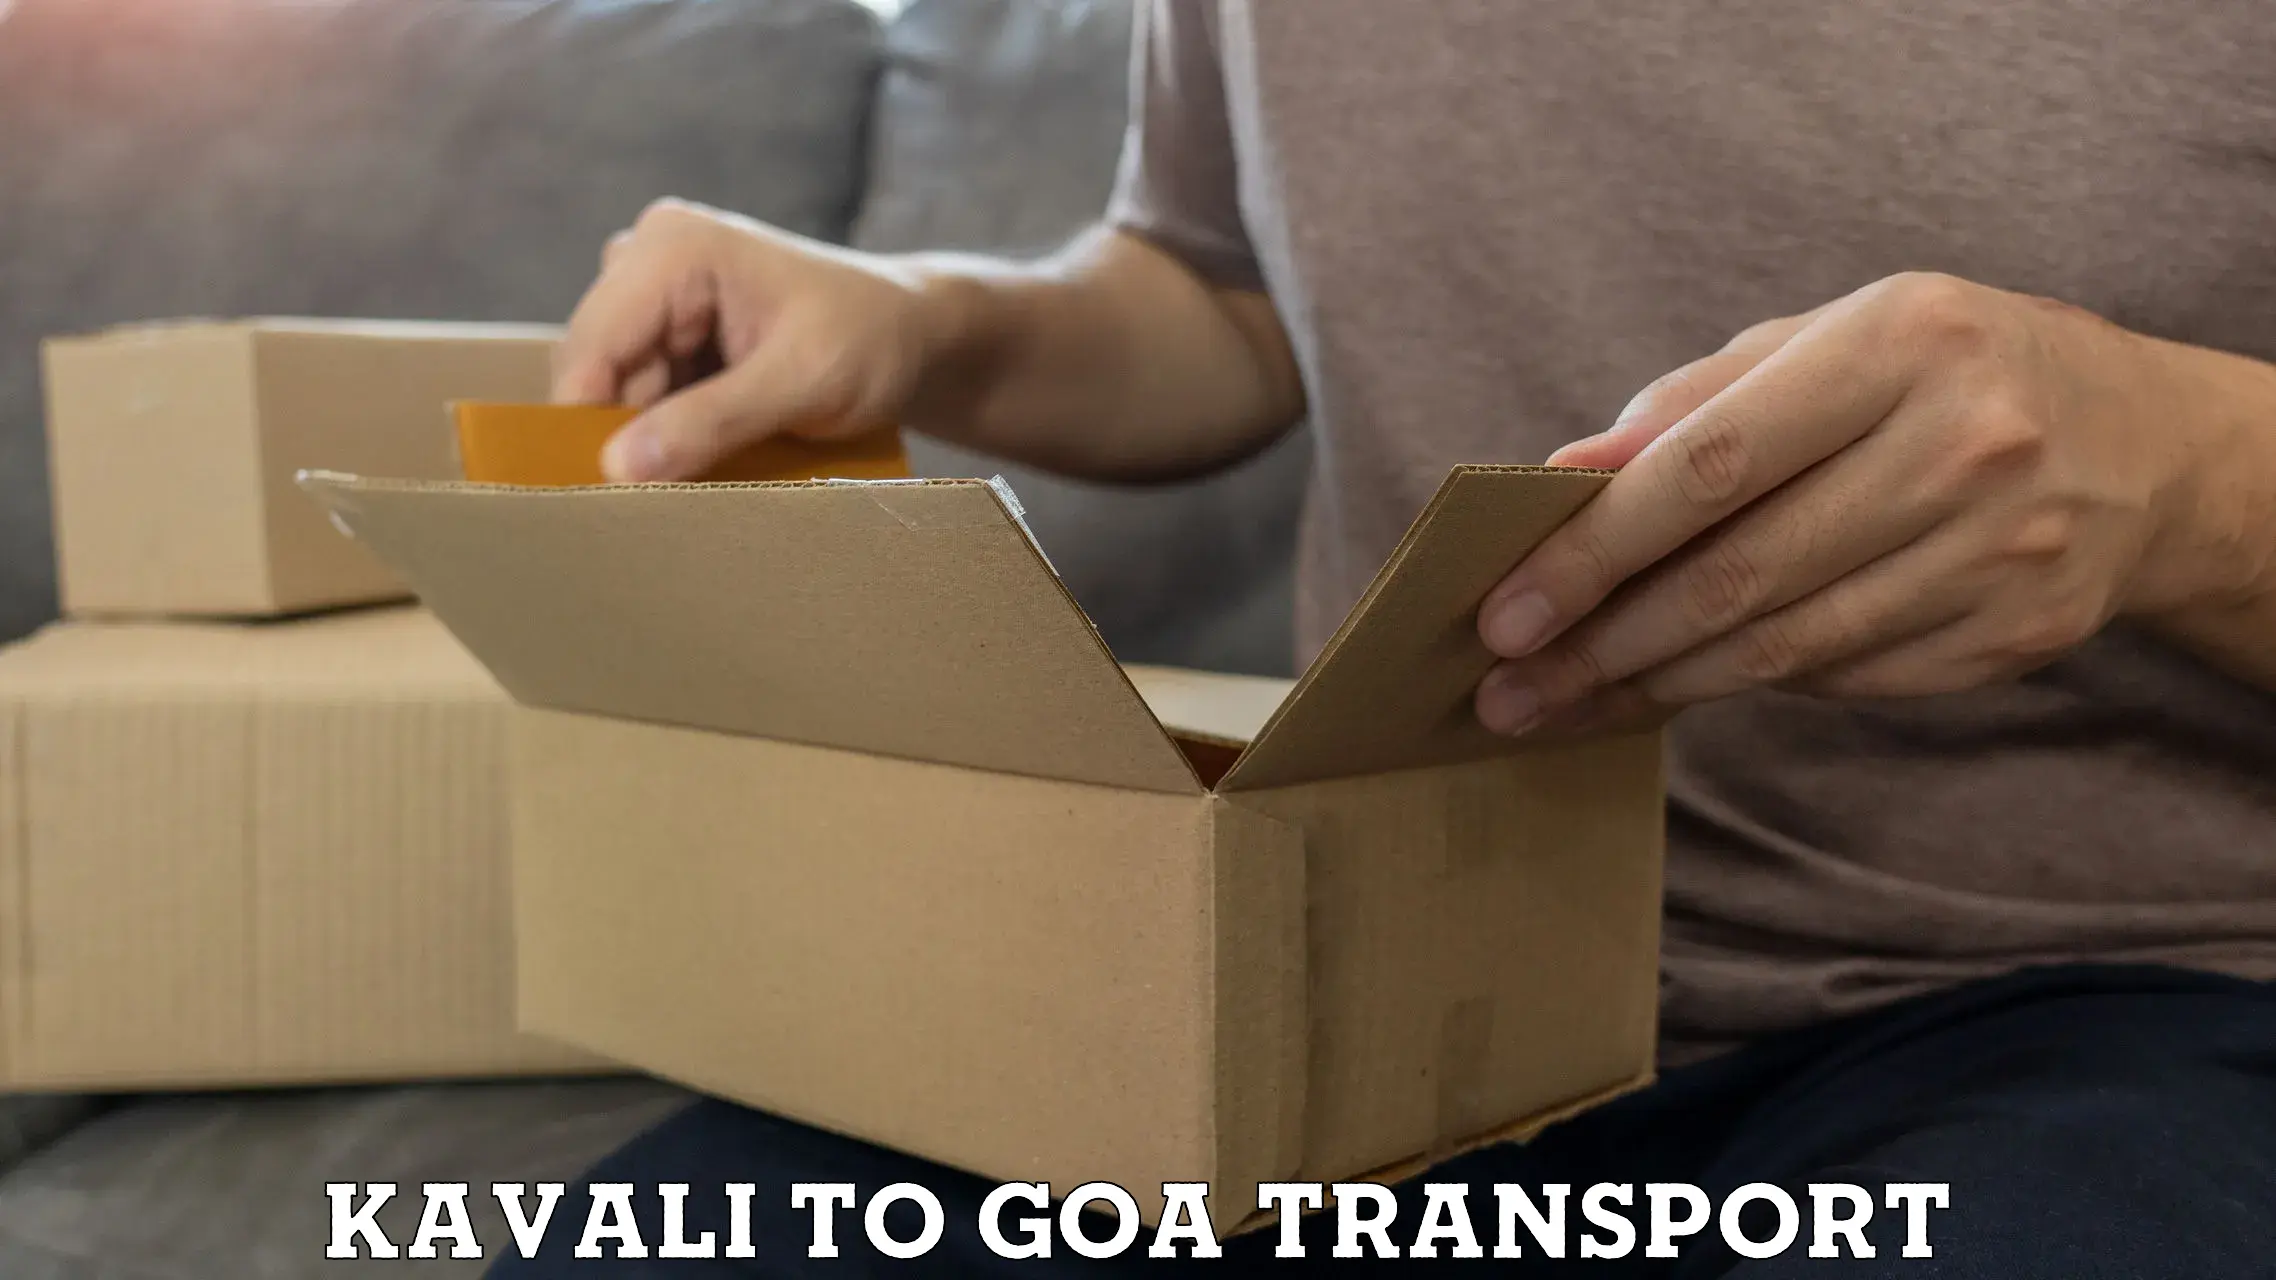 Nearest transport service Kavali to IIT Goa